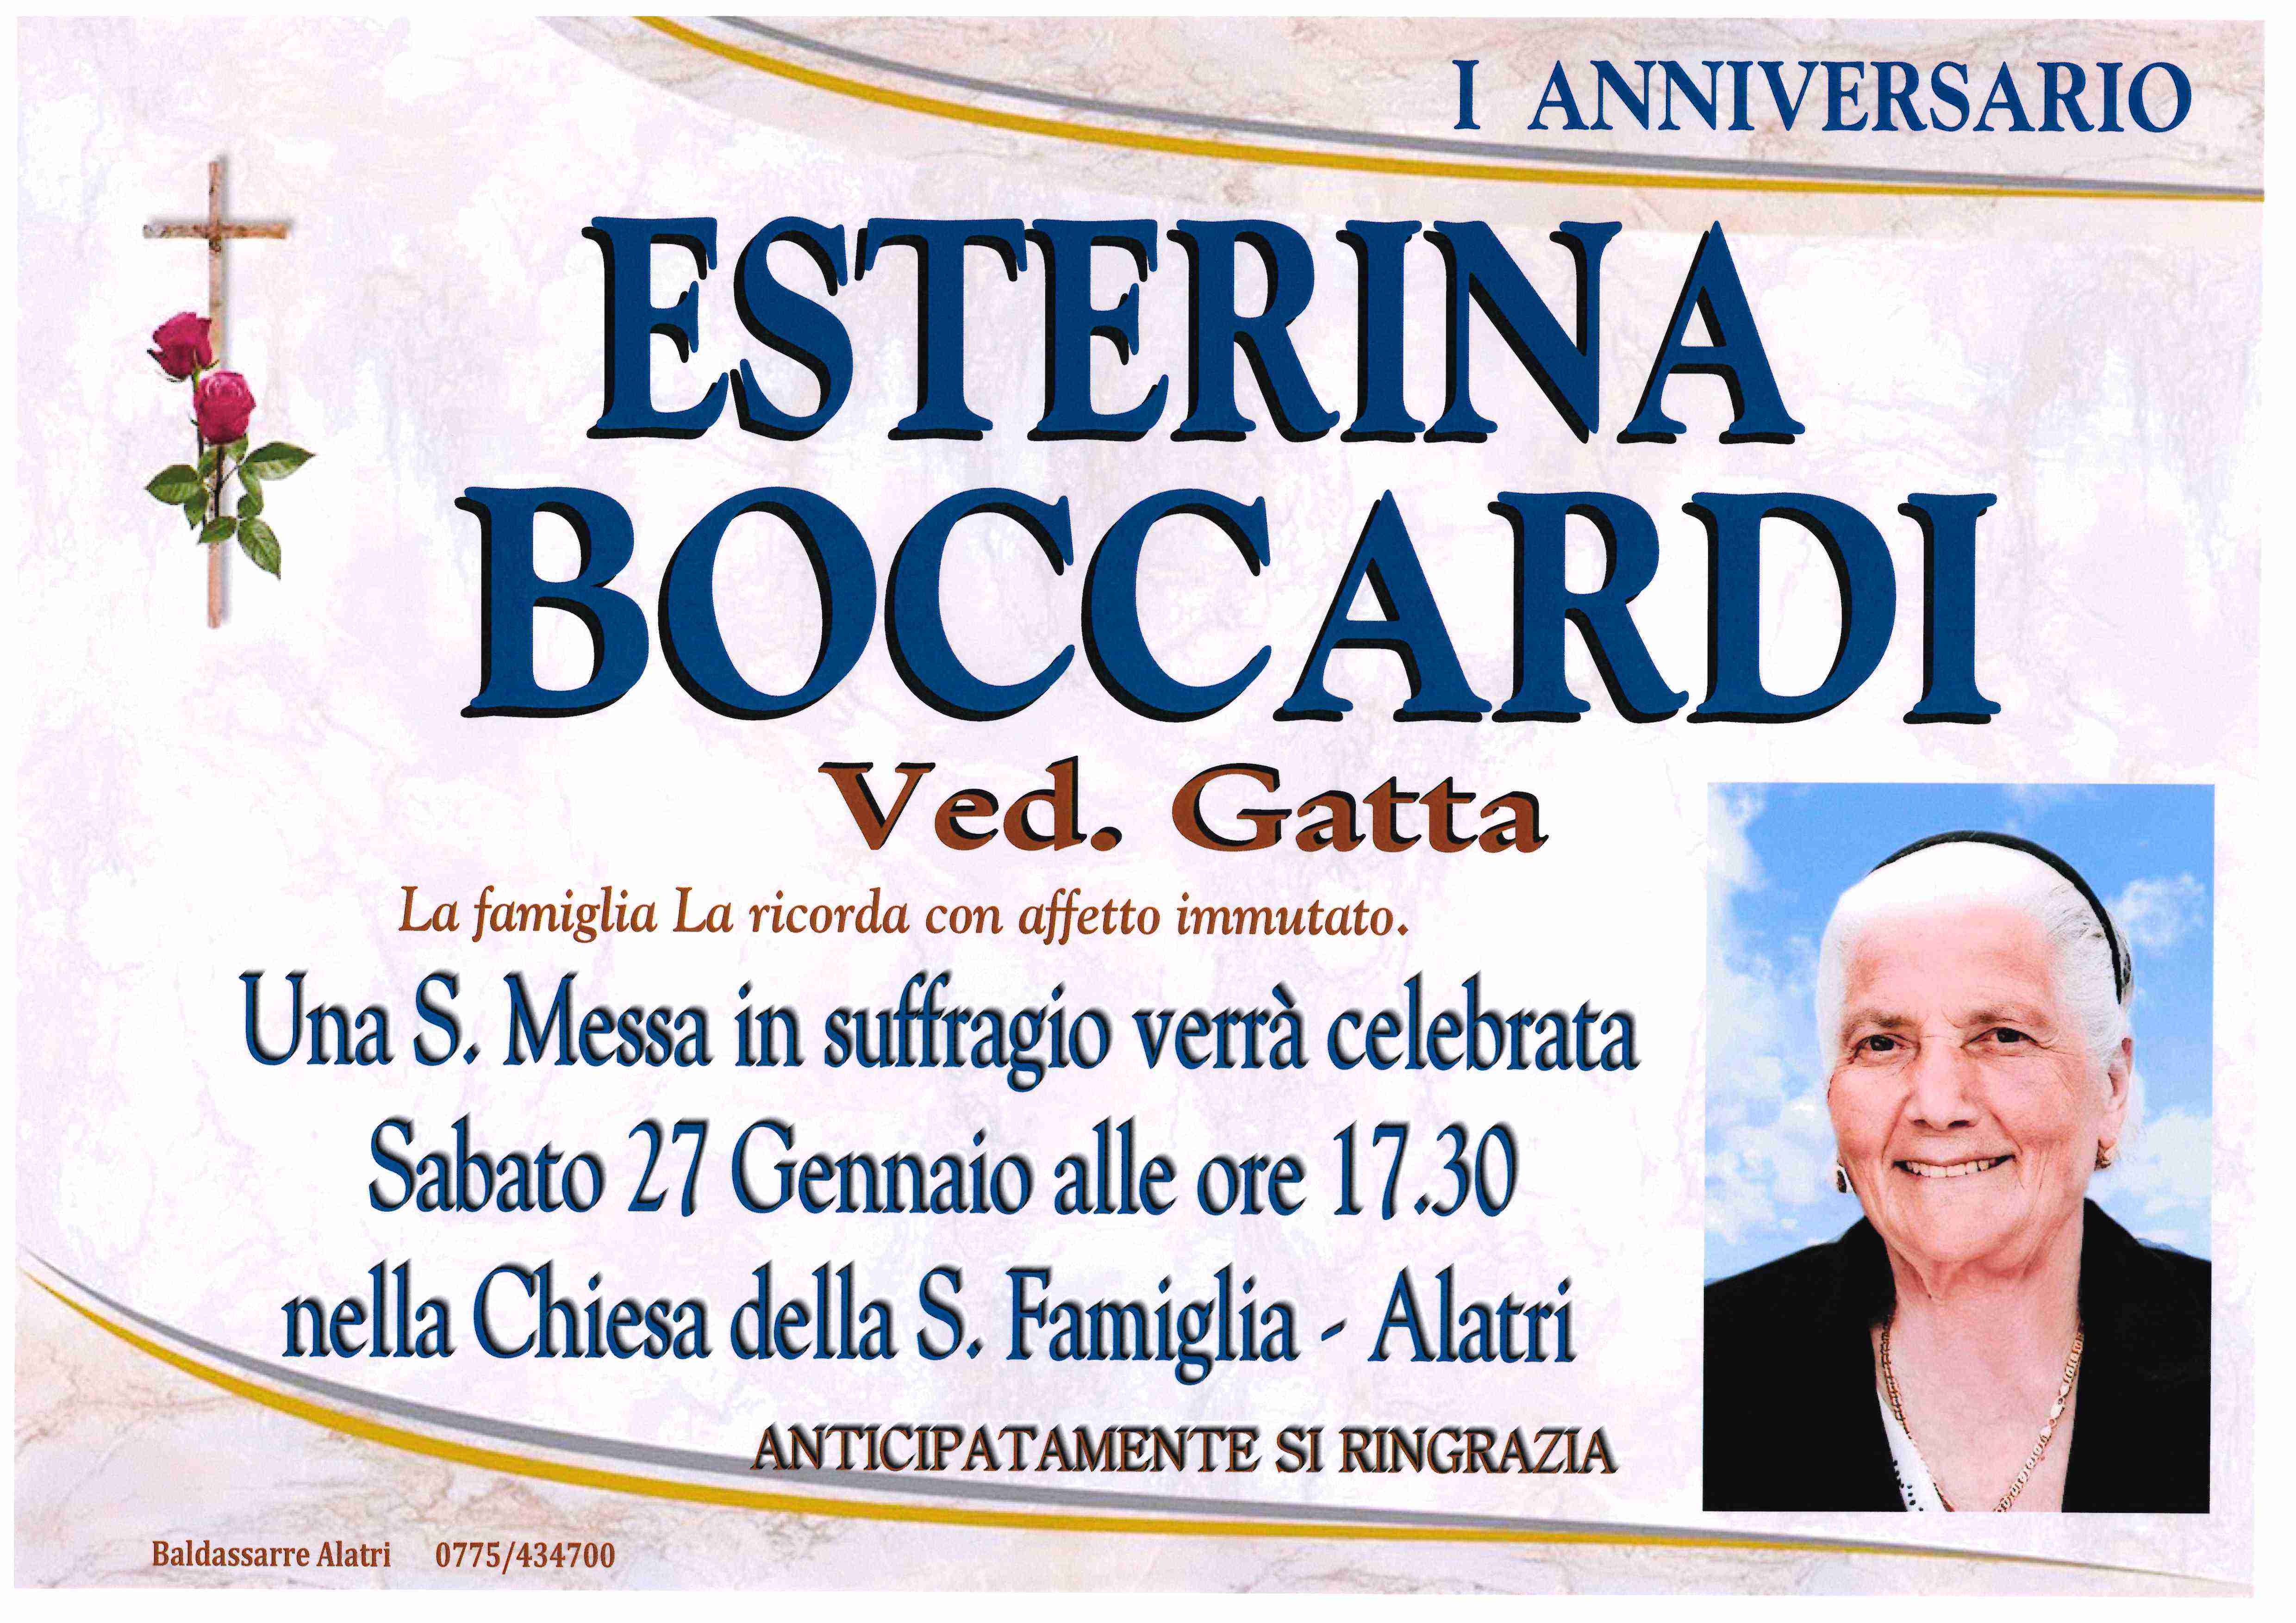 Esterina Boccardi